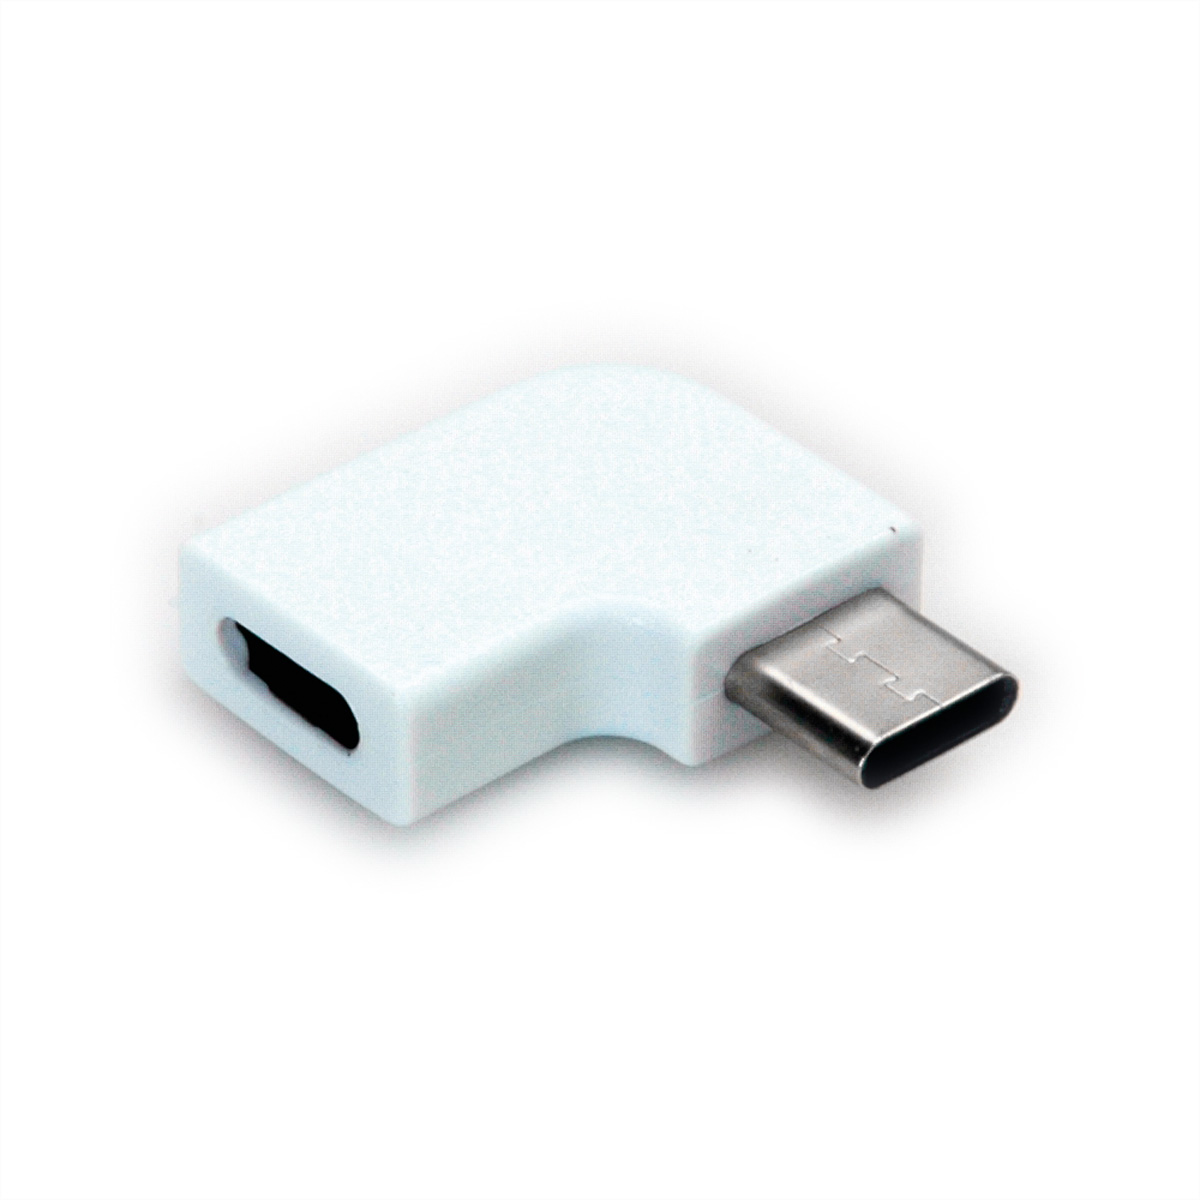 ROLINE USB 3.2 Gen 2 USB Adapter Adapter